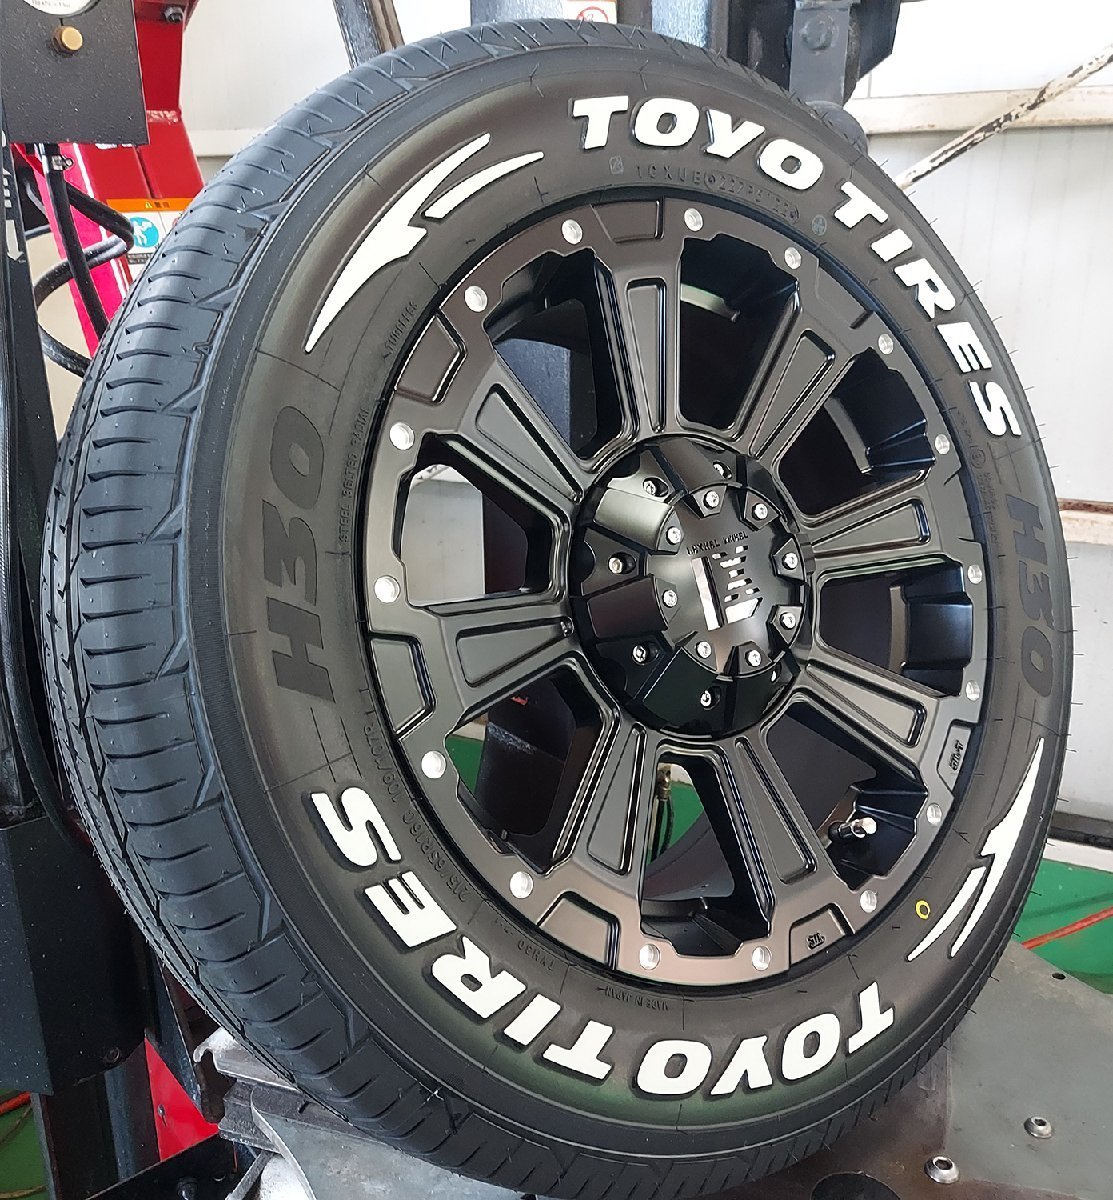 New!!LEXXEL DeathRock 200 серия Hiace TOYO H30 215/65R16 16 дюймовый новый товар колесо с шиной соответствующий требованиям техосмотра van стандарт 